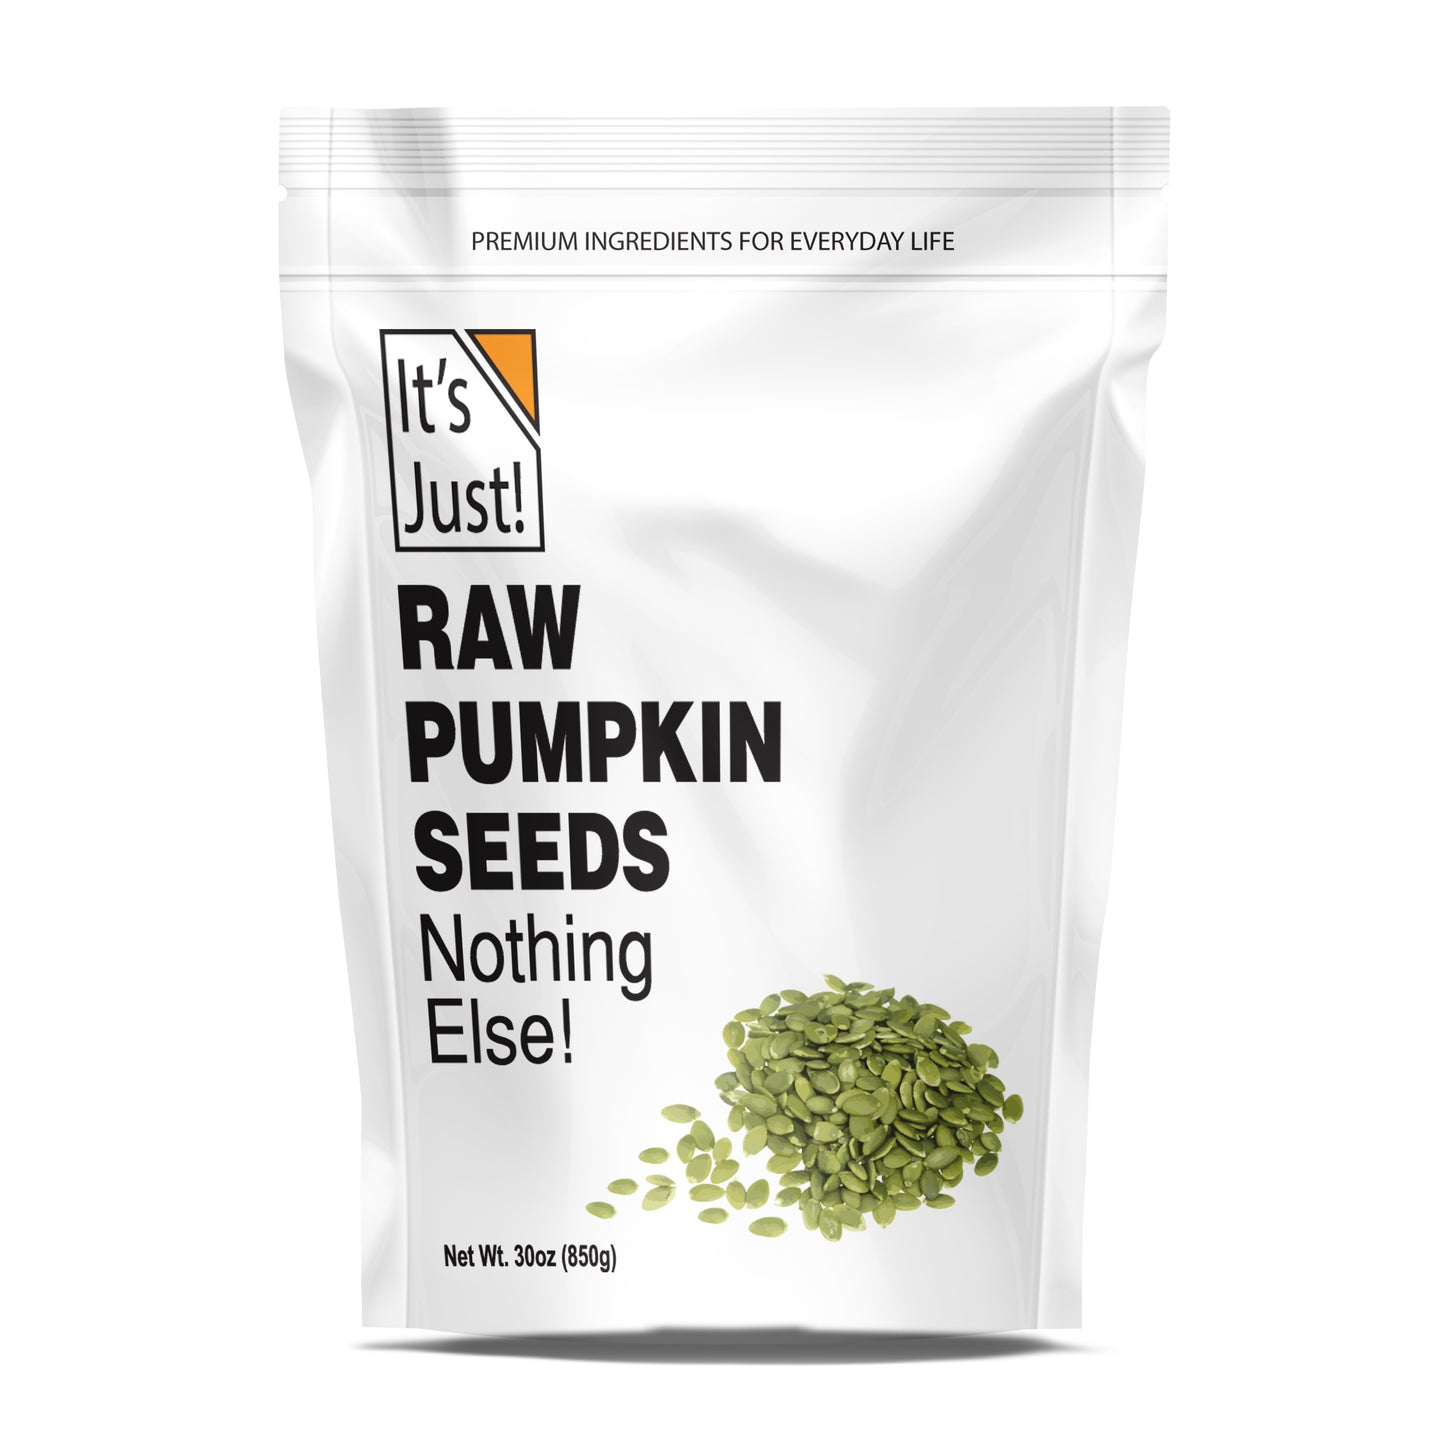 It's Just! - Raw Pumpkin Seeds